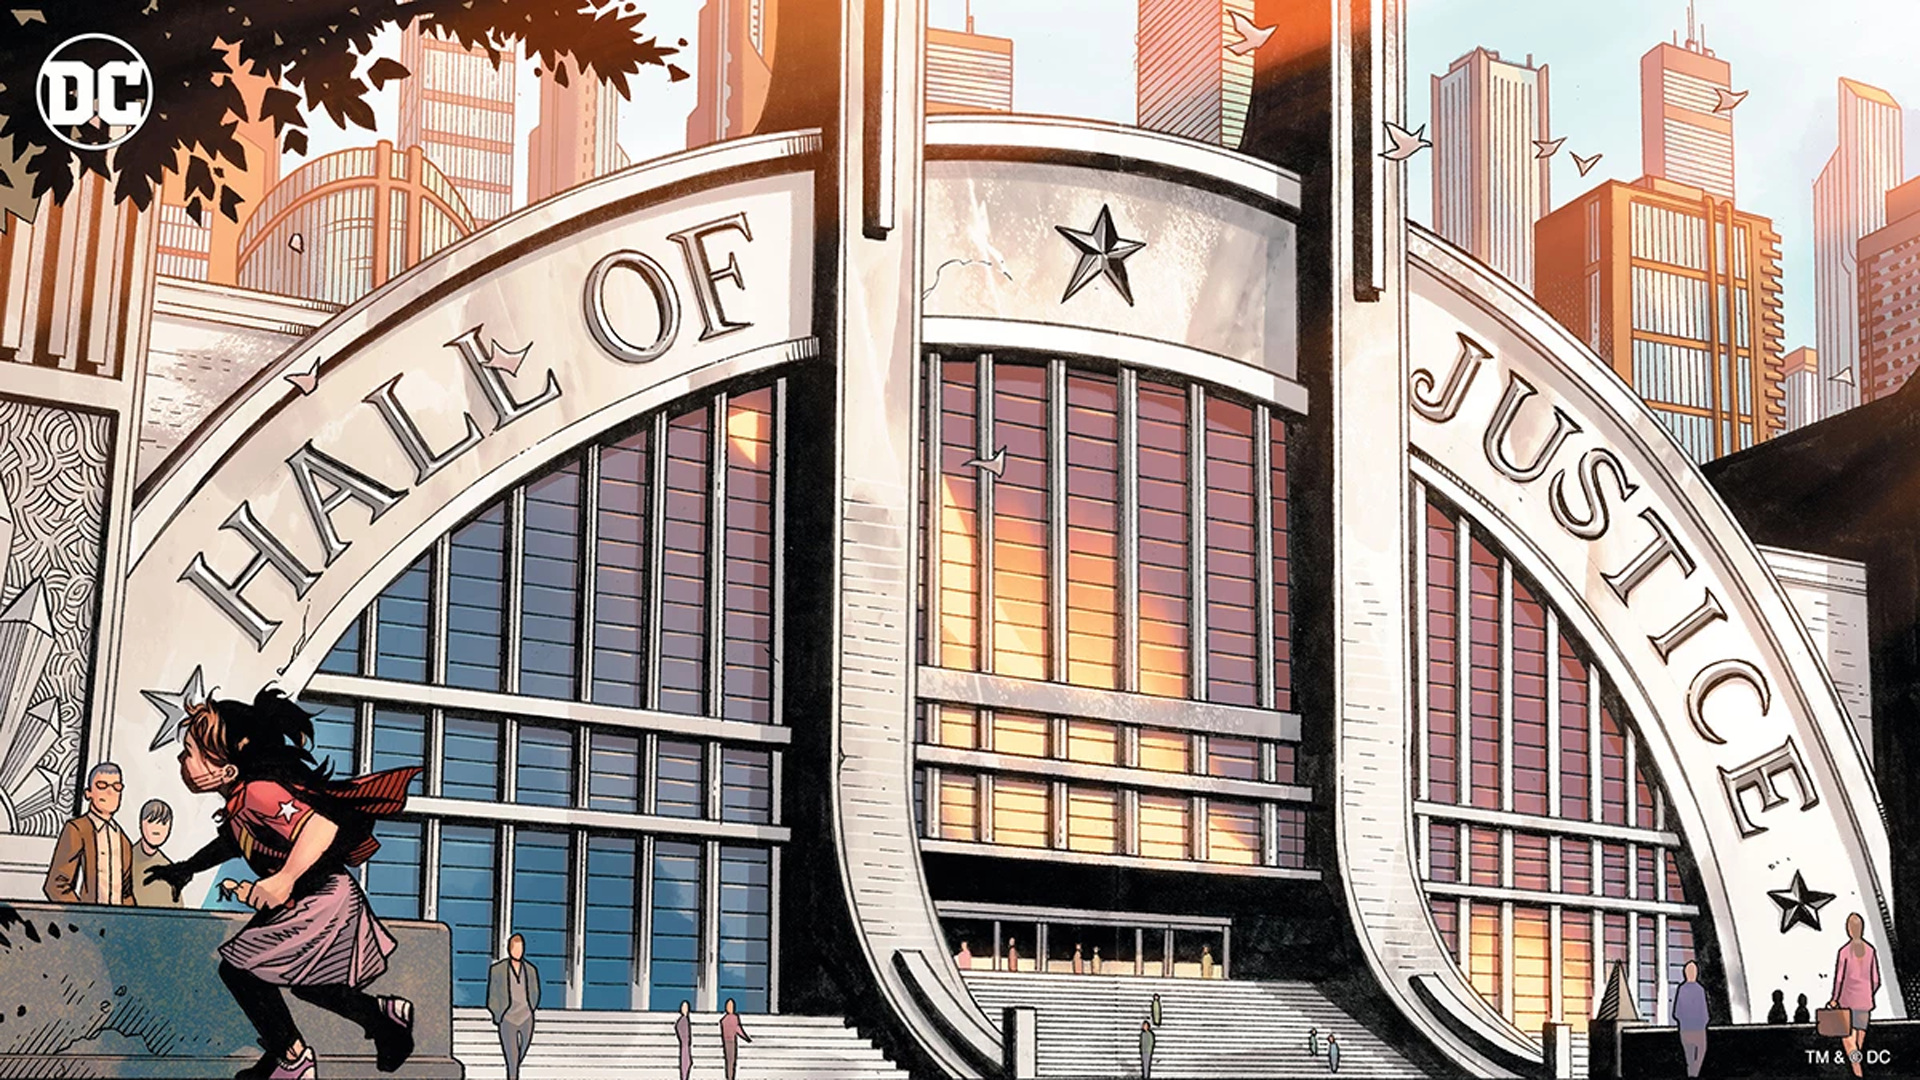 General 1920x1080 DC Comics Gotham City metropolis  Justice League